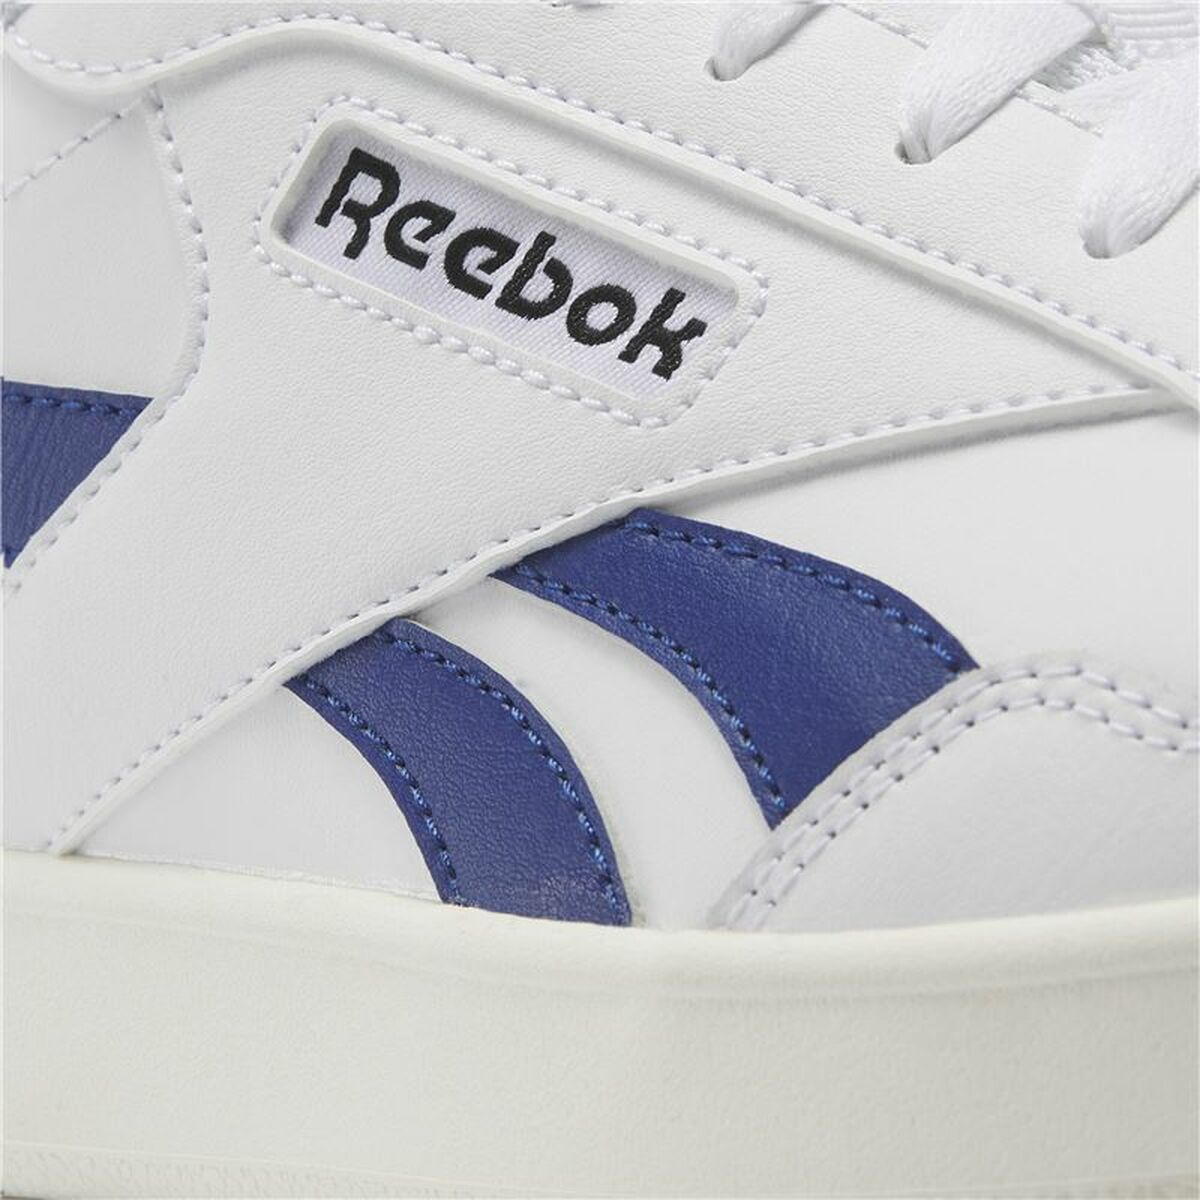 Chaussures de Sport pour Homme Reebok Court Advance Bleu Blanc